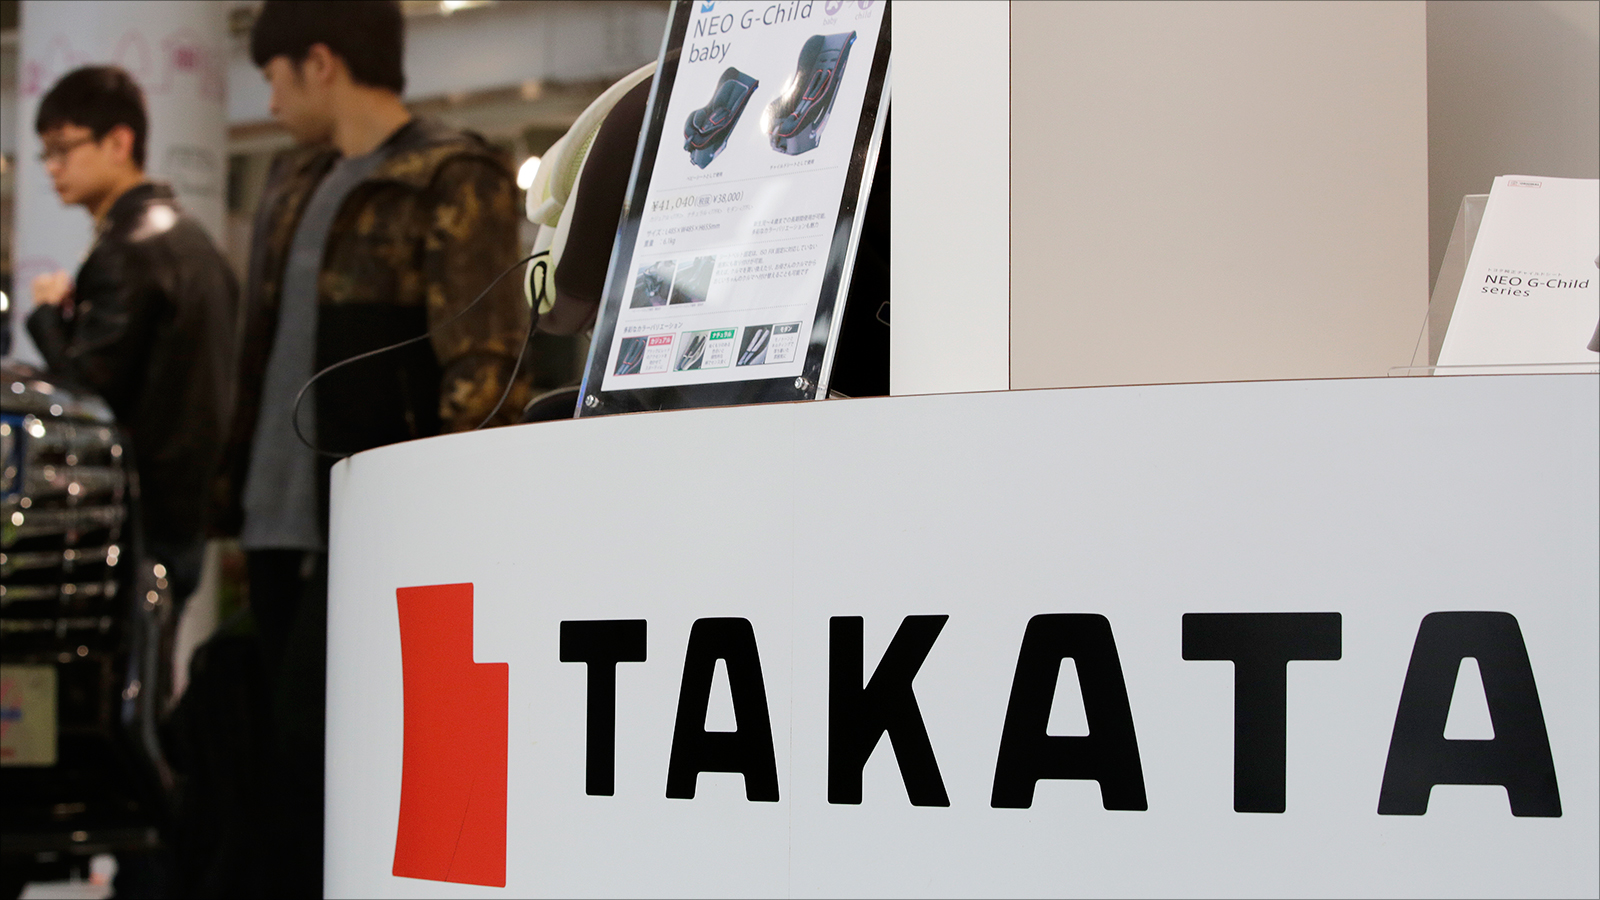 ‪إفلاس شركة تاكاتا هو الأكبر من نوعه في قطاع الصناعة الياباني منذ الحرب العالمية الثانية‬ إفلاس شركة تاكاتا هو الأكبر من نوعه في قطاع الصناعة الياباني منذ الحرب العالمية الثانية (الأوروبية)